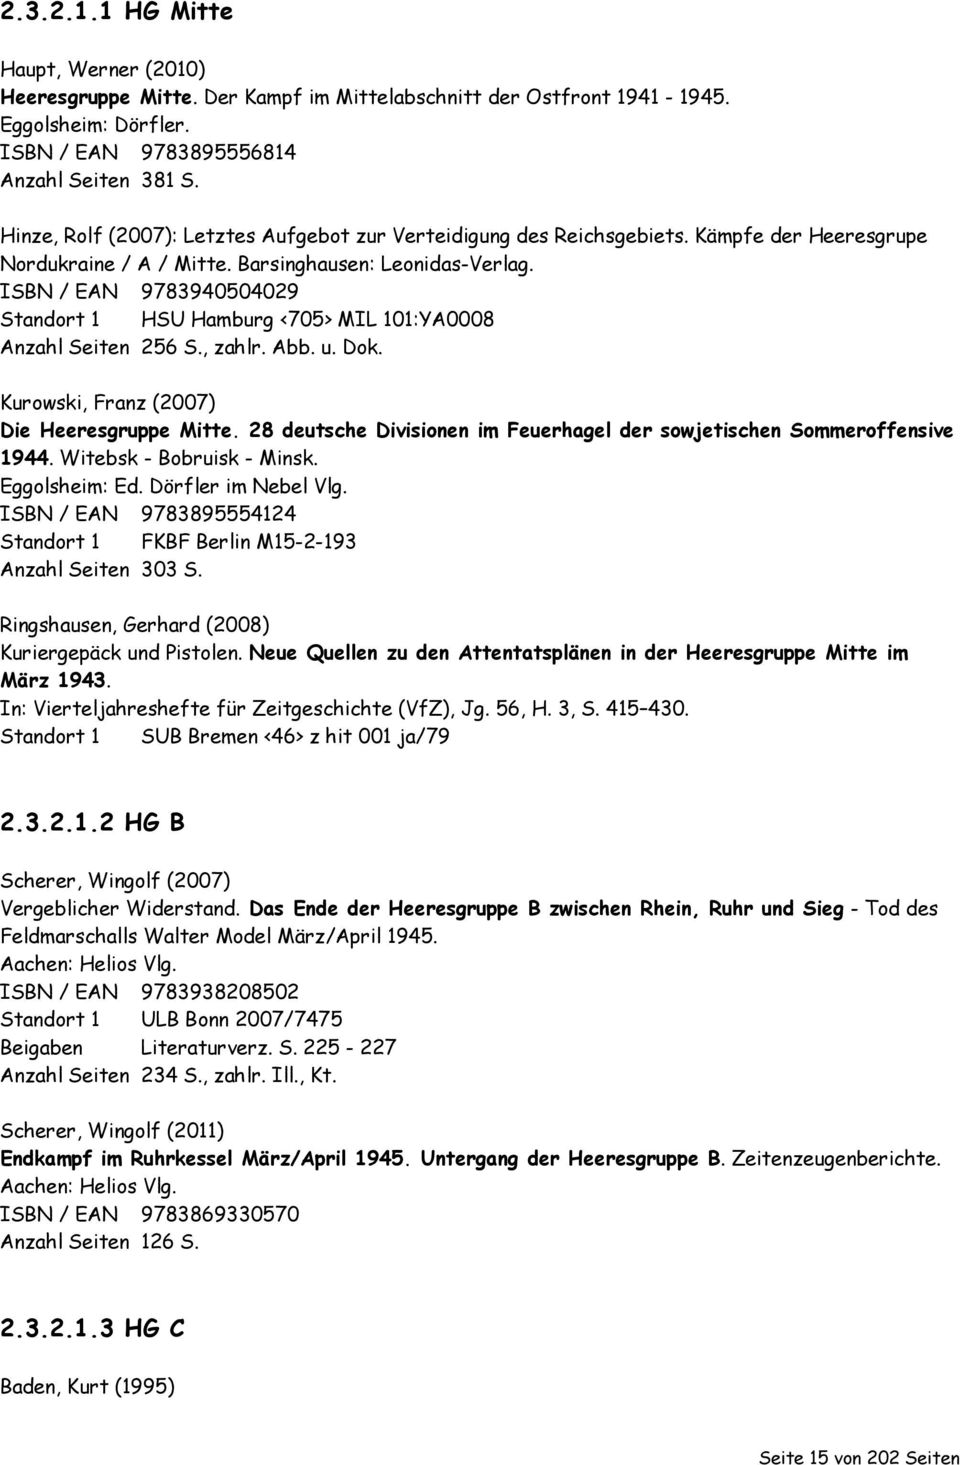 ISBN / EAN 9783940504029 Standort 1 HSU Hamburg <705> MIL 101:YA0008 Anzahl Seiten 256 S., zahlr. Abb. u. Dok. Kurowski, Franz (2007) Die Heeresgruppe Mitte.